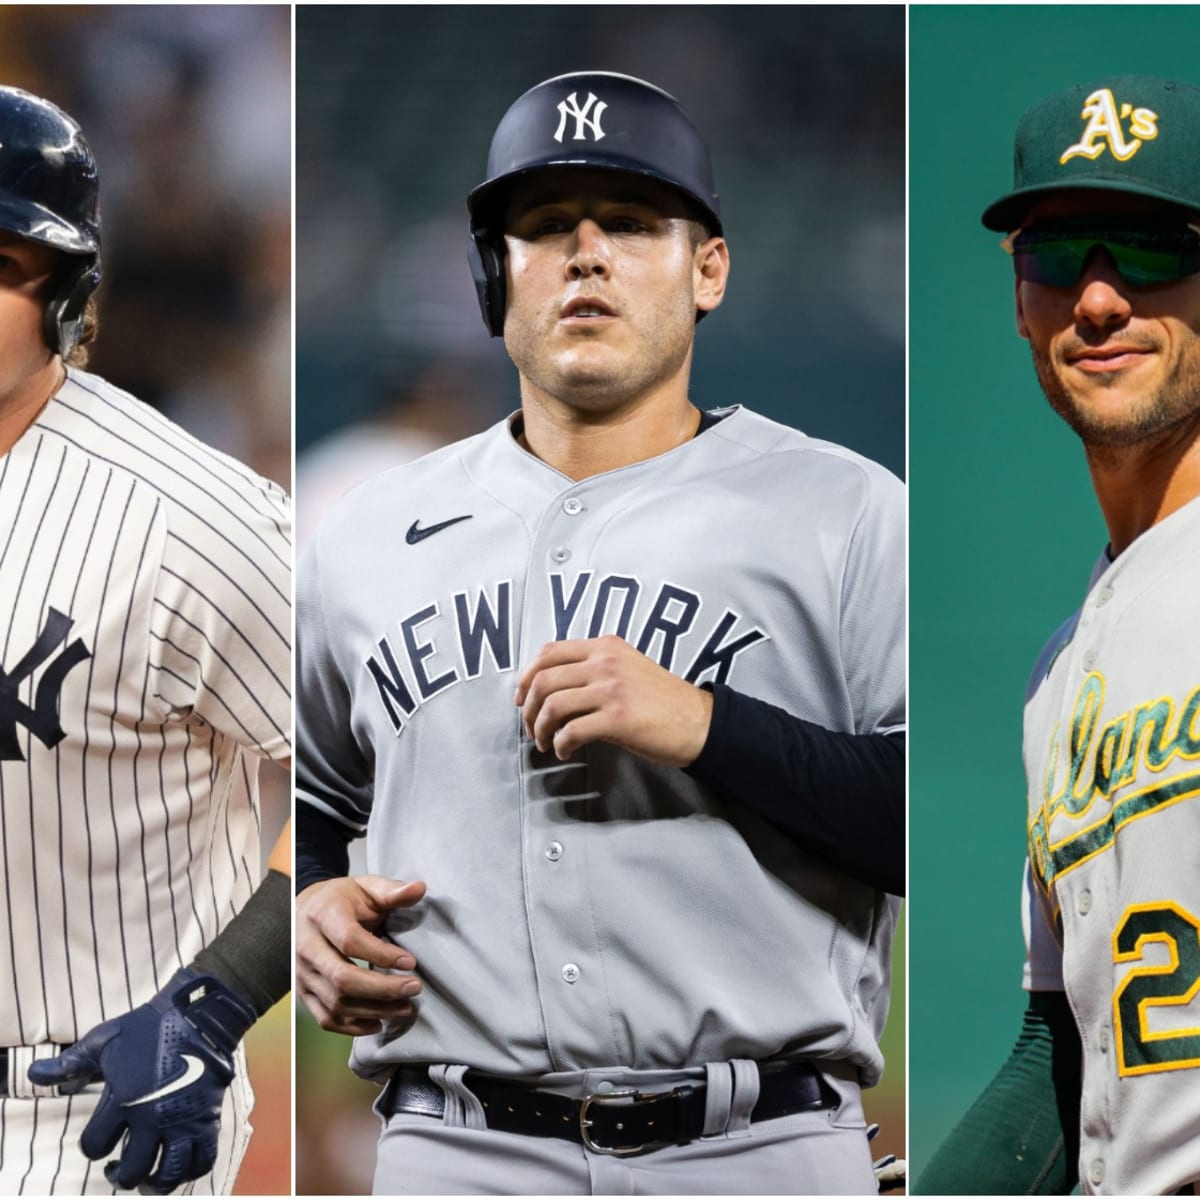 New York Yankees' star Luke Voit is among elite first basemen